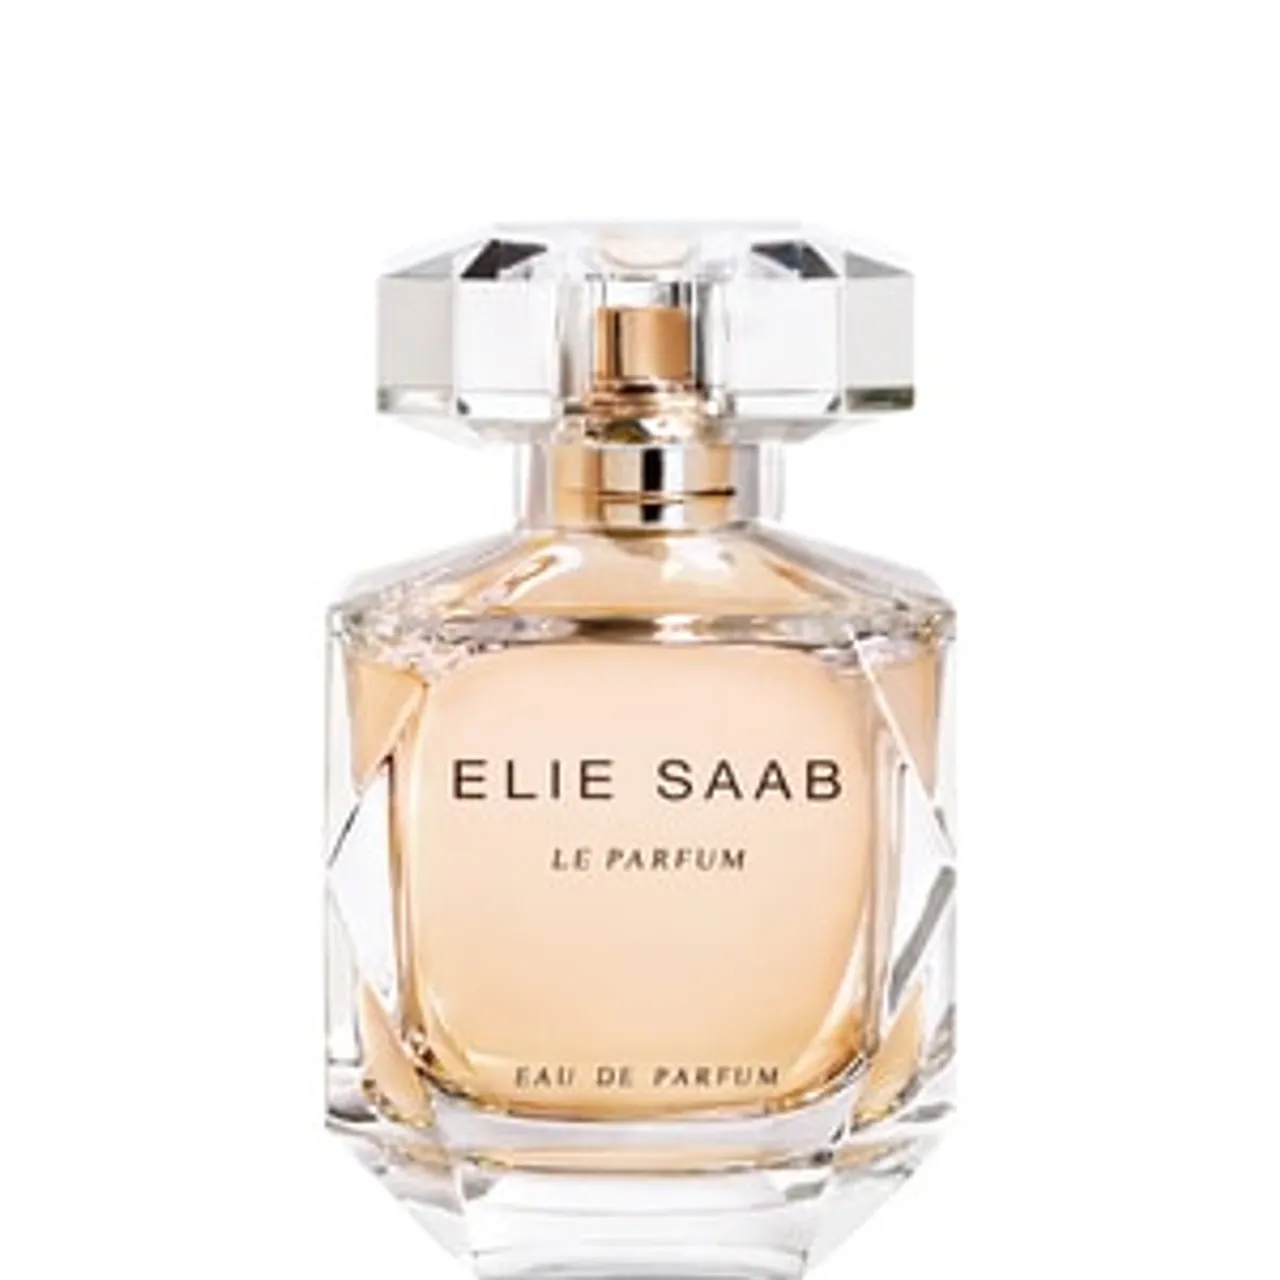 Elie Saab Le Parfum EAU DE PARFUM SPRAY 50 ML